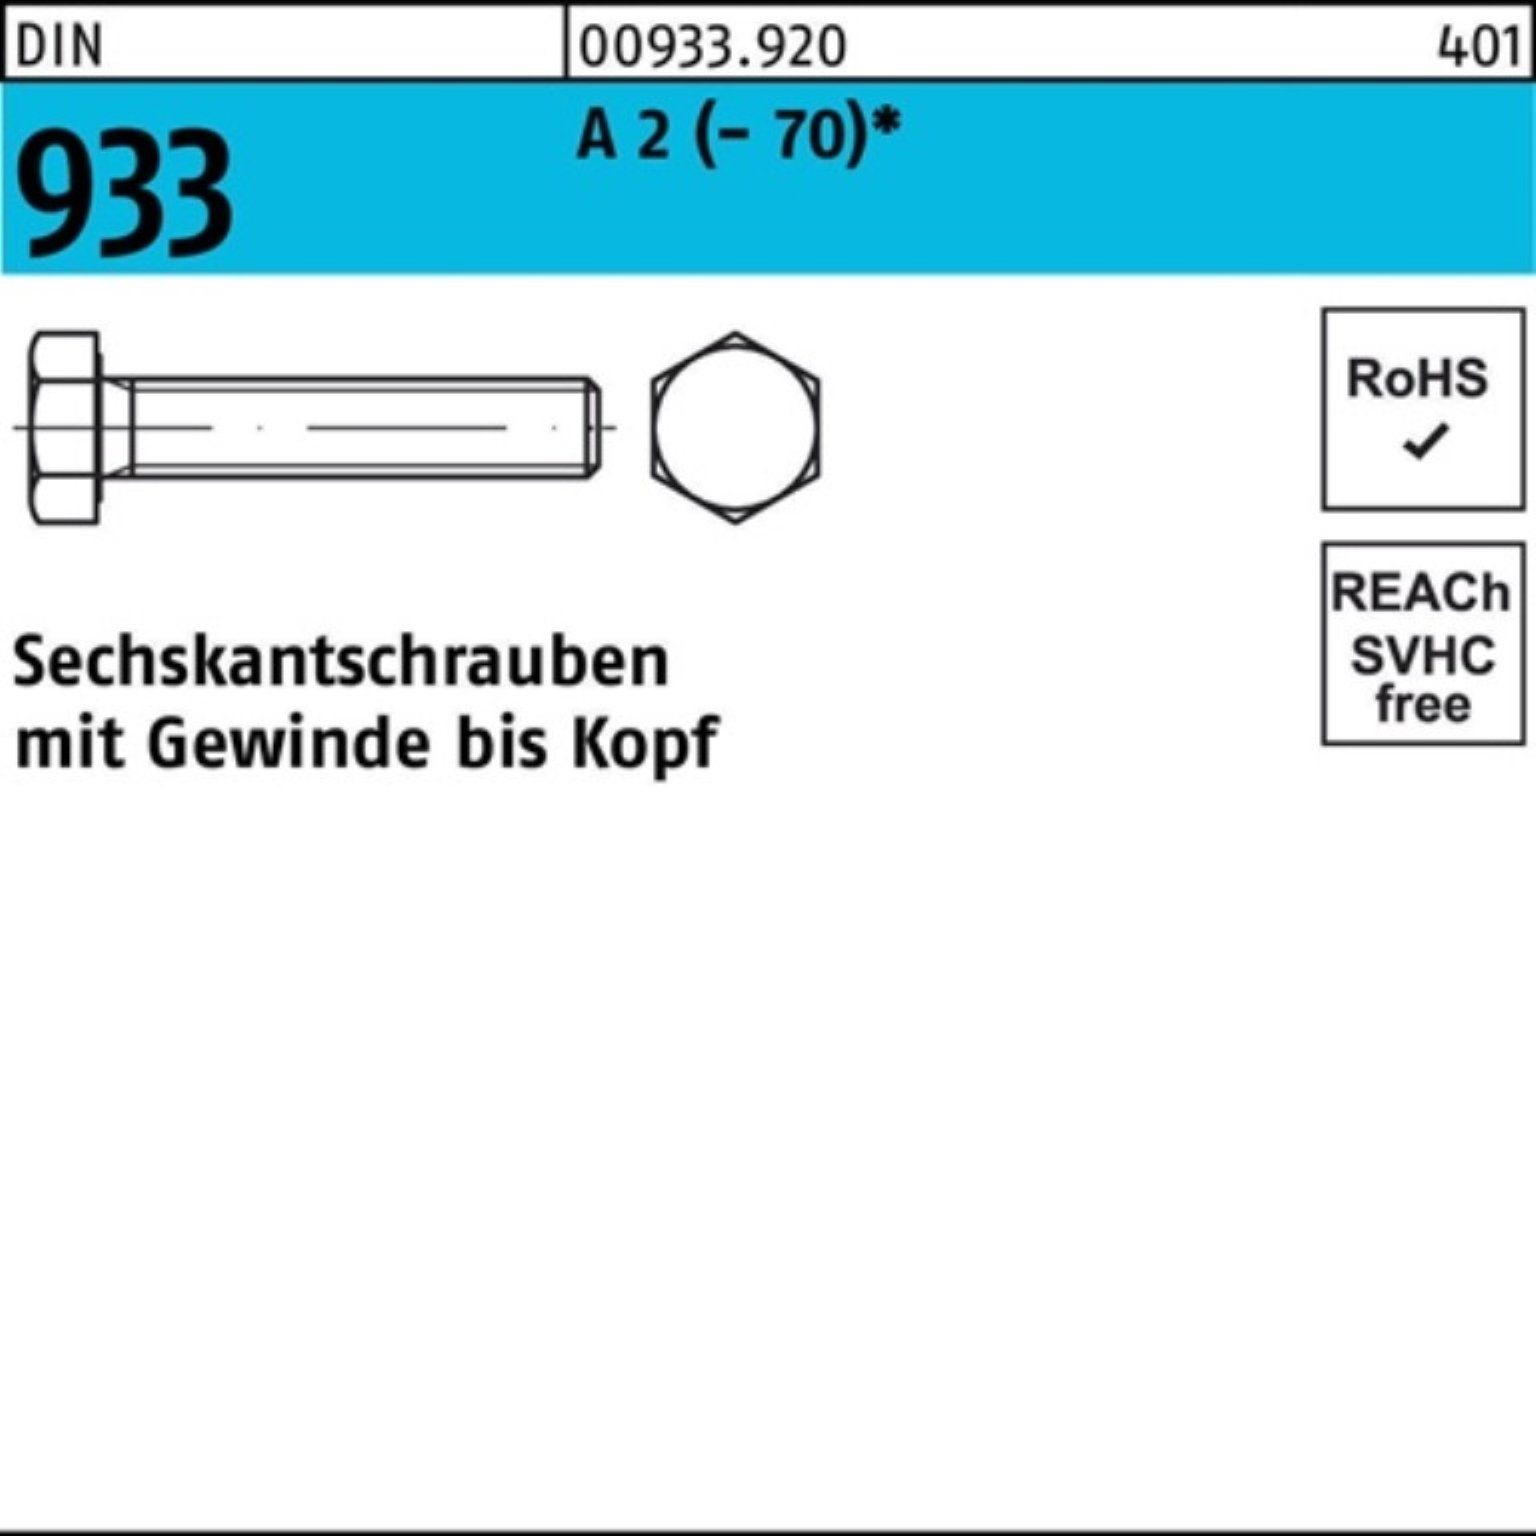 Reyher Sechskantschraube 100 A 40 100er 933 Stück Sechskantschraube Pack 2 M6x DIN (70) D VG